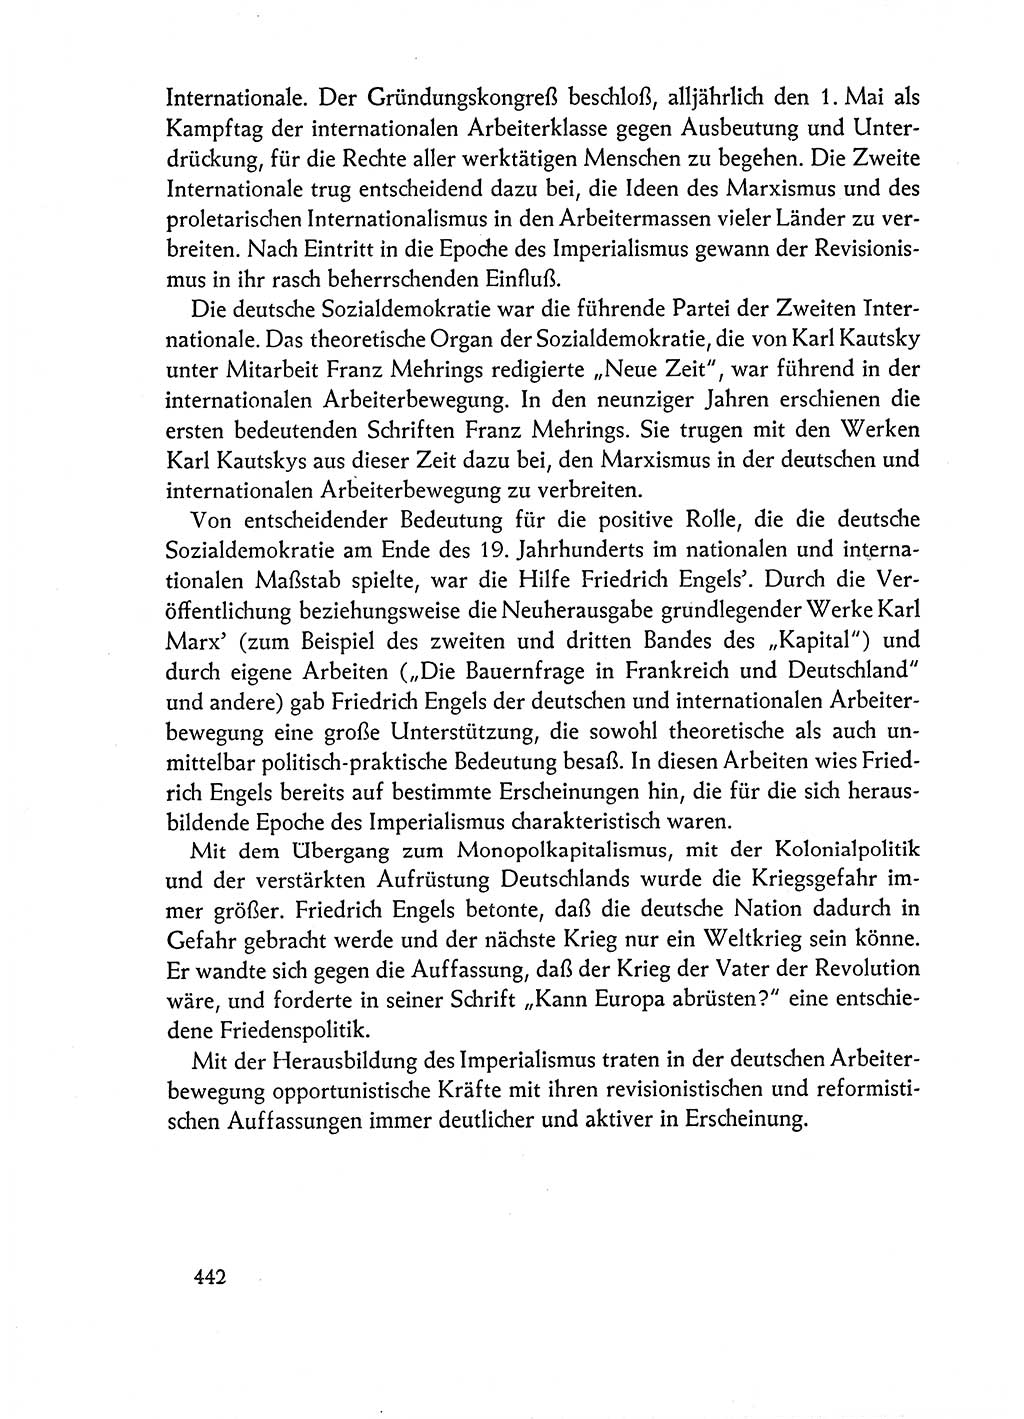 Dokumente der Sozialistischen Einheitspartei Deutschlands (SED) [Deutsche Demokratische Republik (DDR)] 1962-1963, Seite 442 (Dok. SED DDR 1962-1963, S. 442)